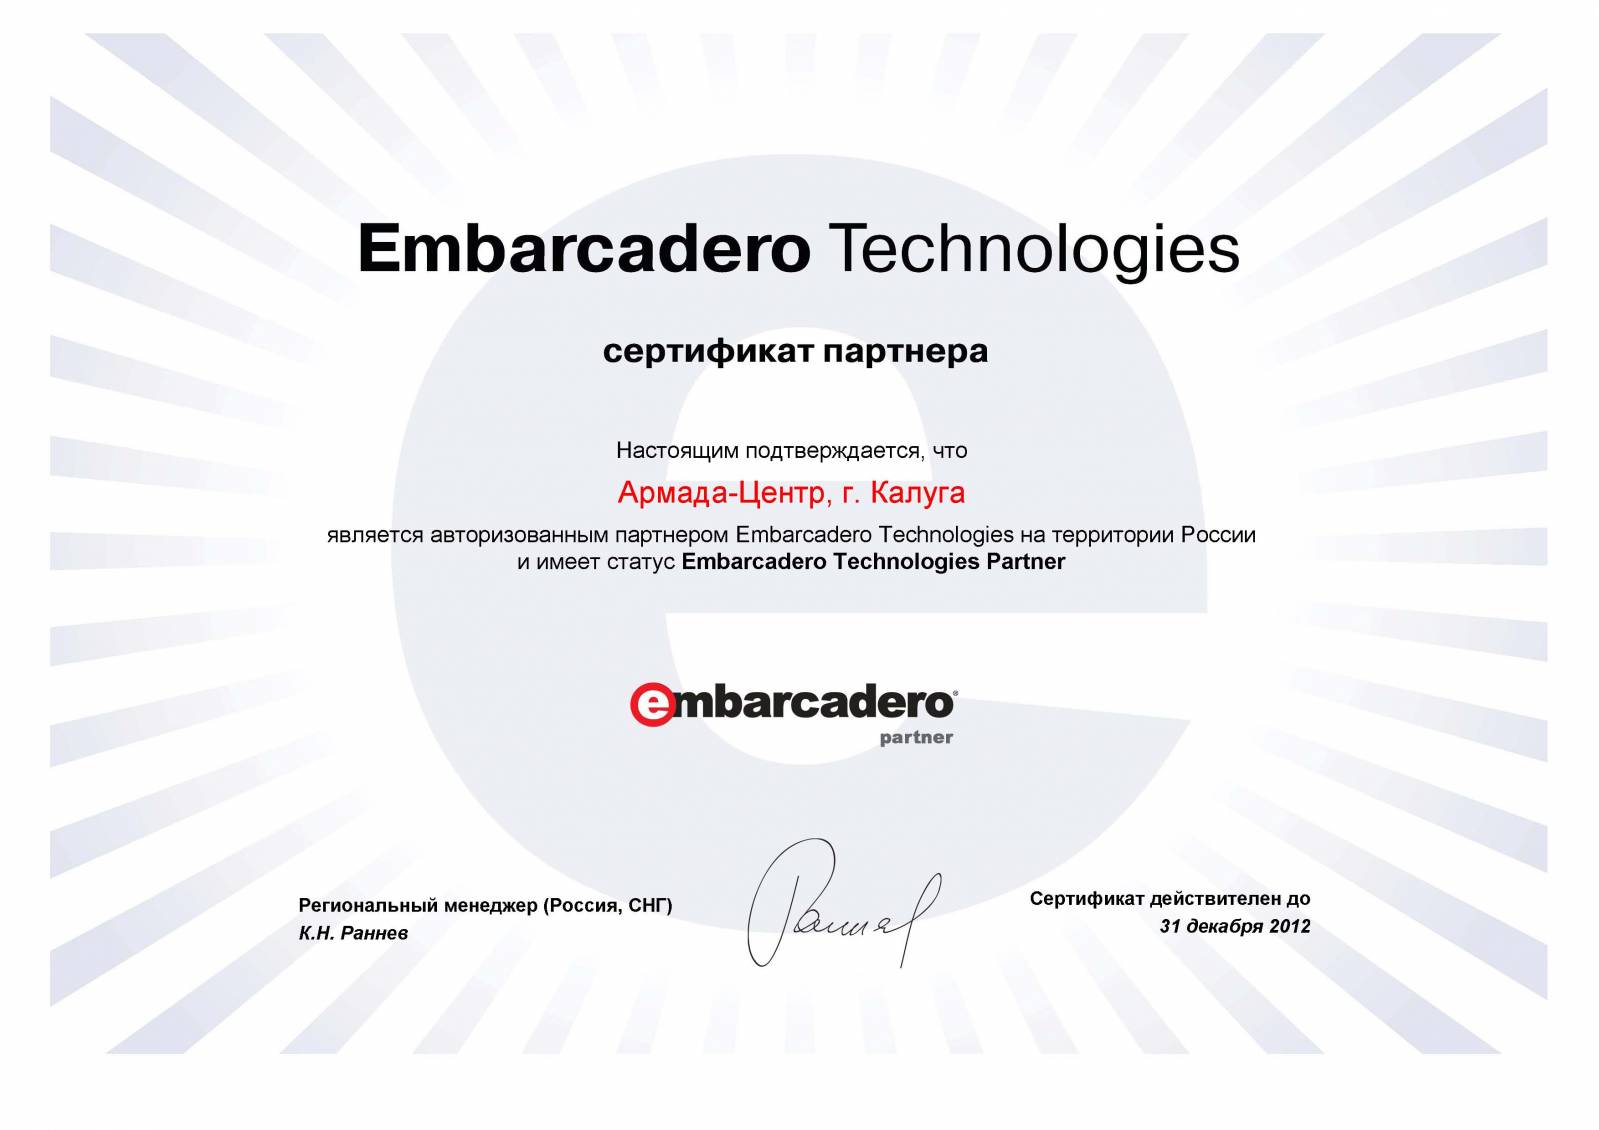 Embarcadero Technologies. Авторизованный партнер. Rit Tech авторизированный партнер. Сертификация сети